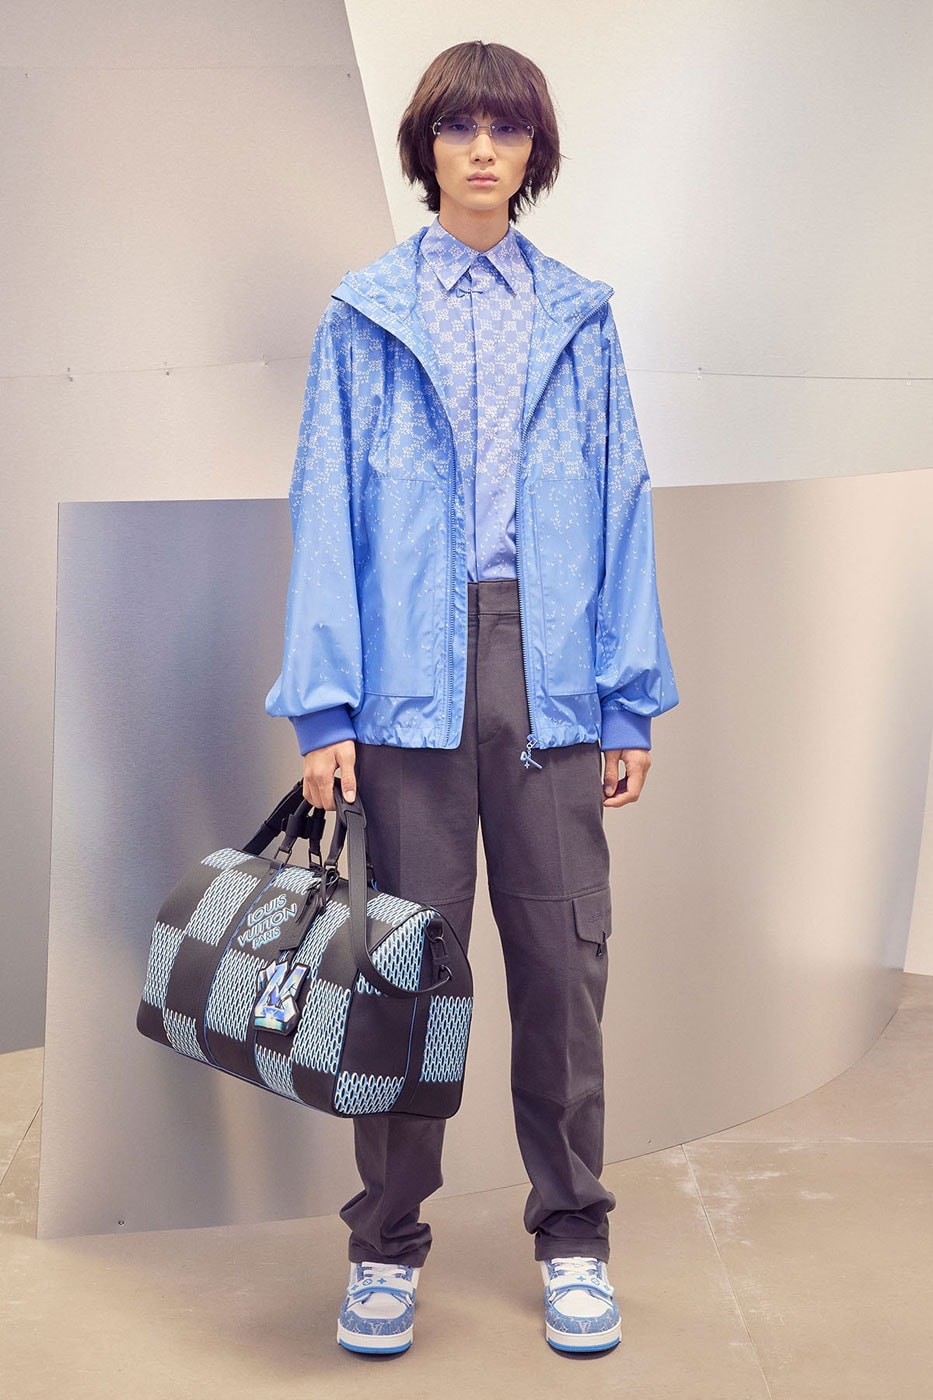 Louis Vuitton unveils Virgil Abloh's final collection